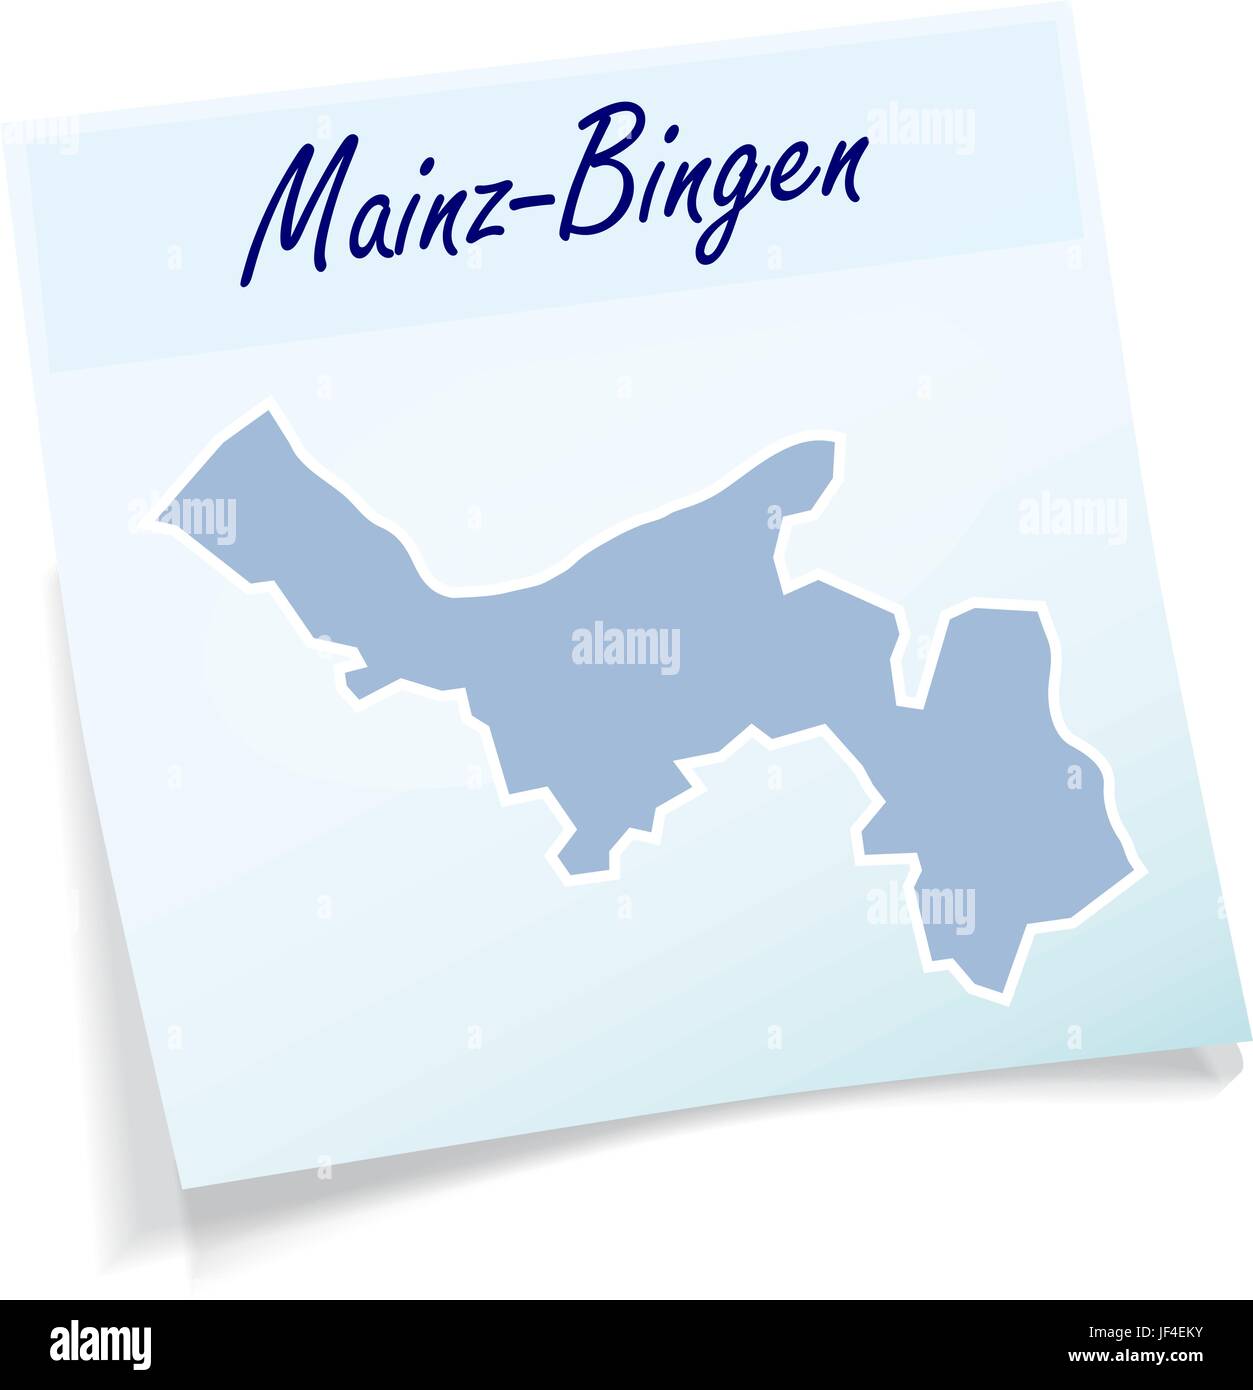 Mainz-bingen comme bloc-notes Illustration de Vecteur